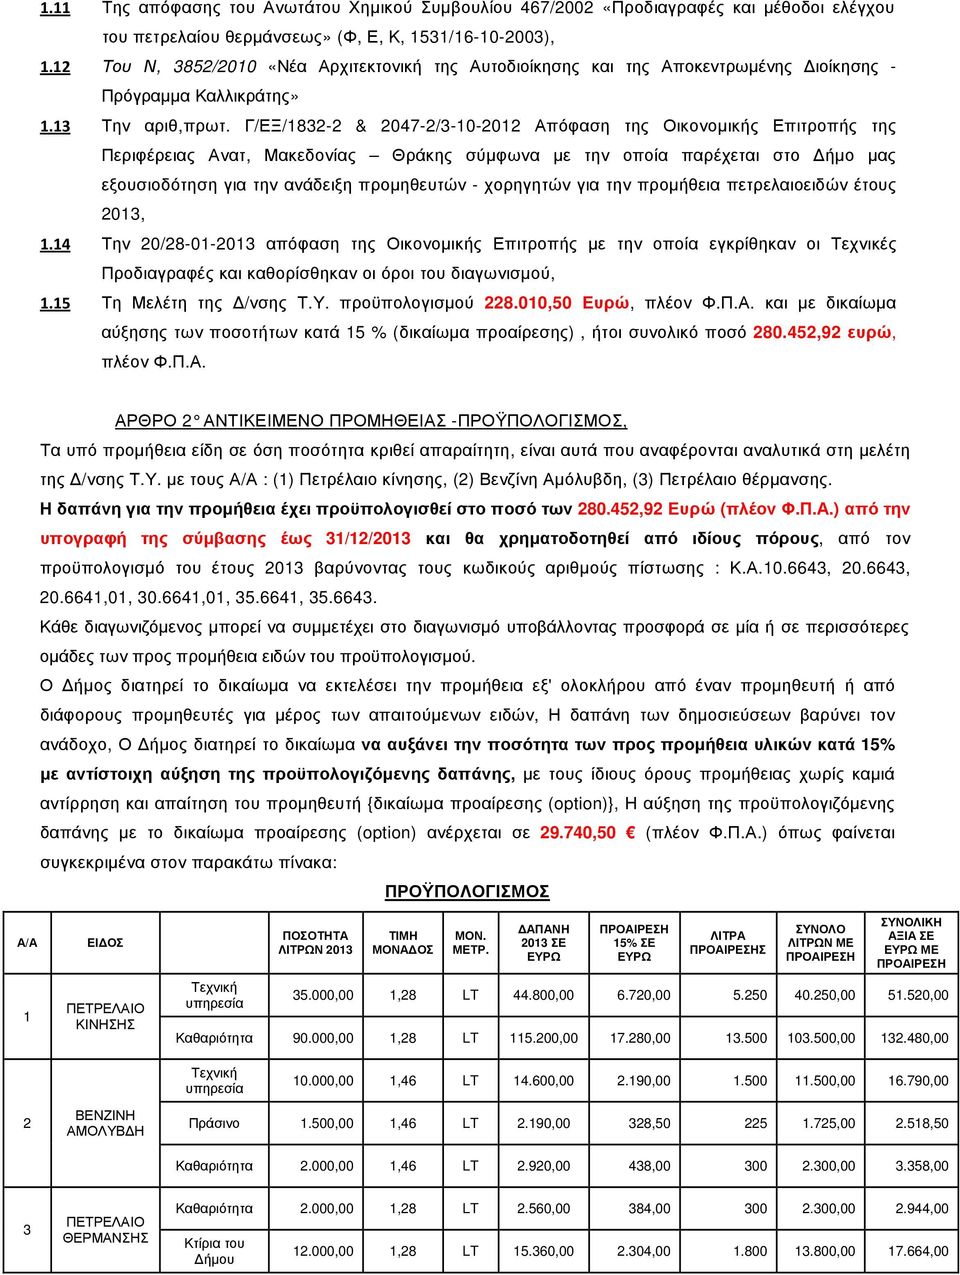 Γ/ΕΞ/1832-2 & 2047-2/3-10-2012 Απόφαση της Οικονοµικής Επιτροπής της Περιφέρειας Ανατ, Μακεδονίας Θράκης σύµφωνα µε την οποία παρέχεται στο ήµο µας εξουσιοδότηση για την ανάδειξη προµηθευτών -